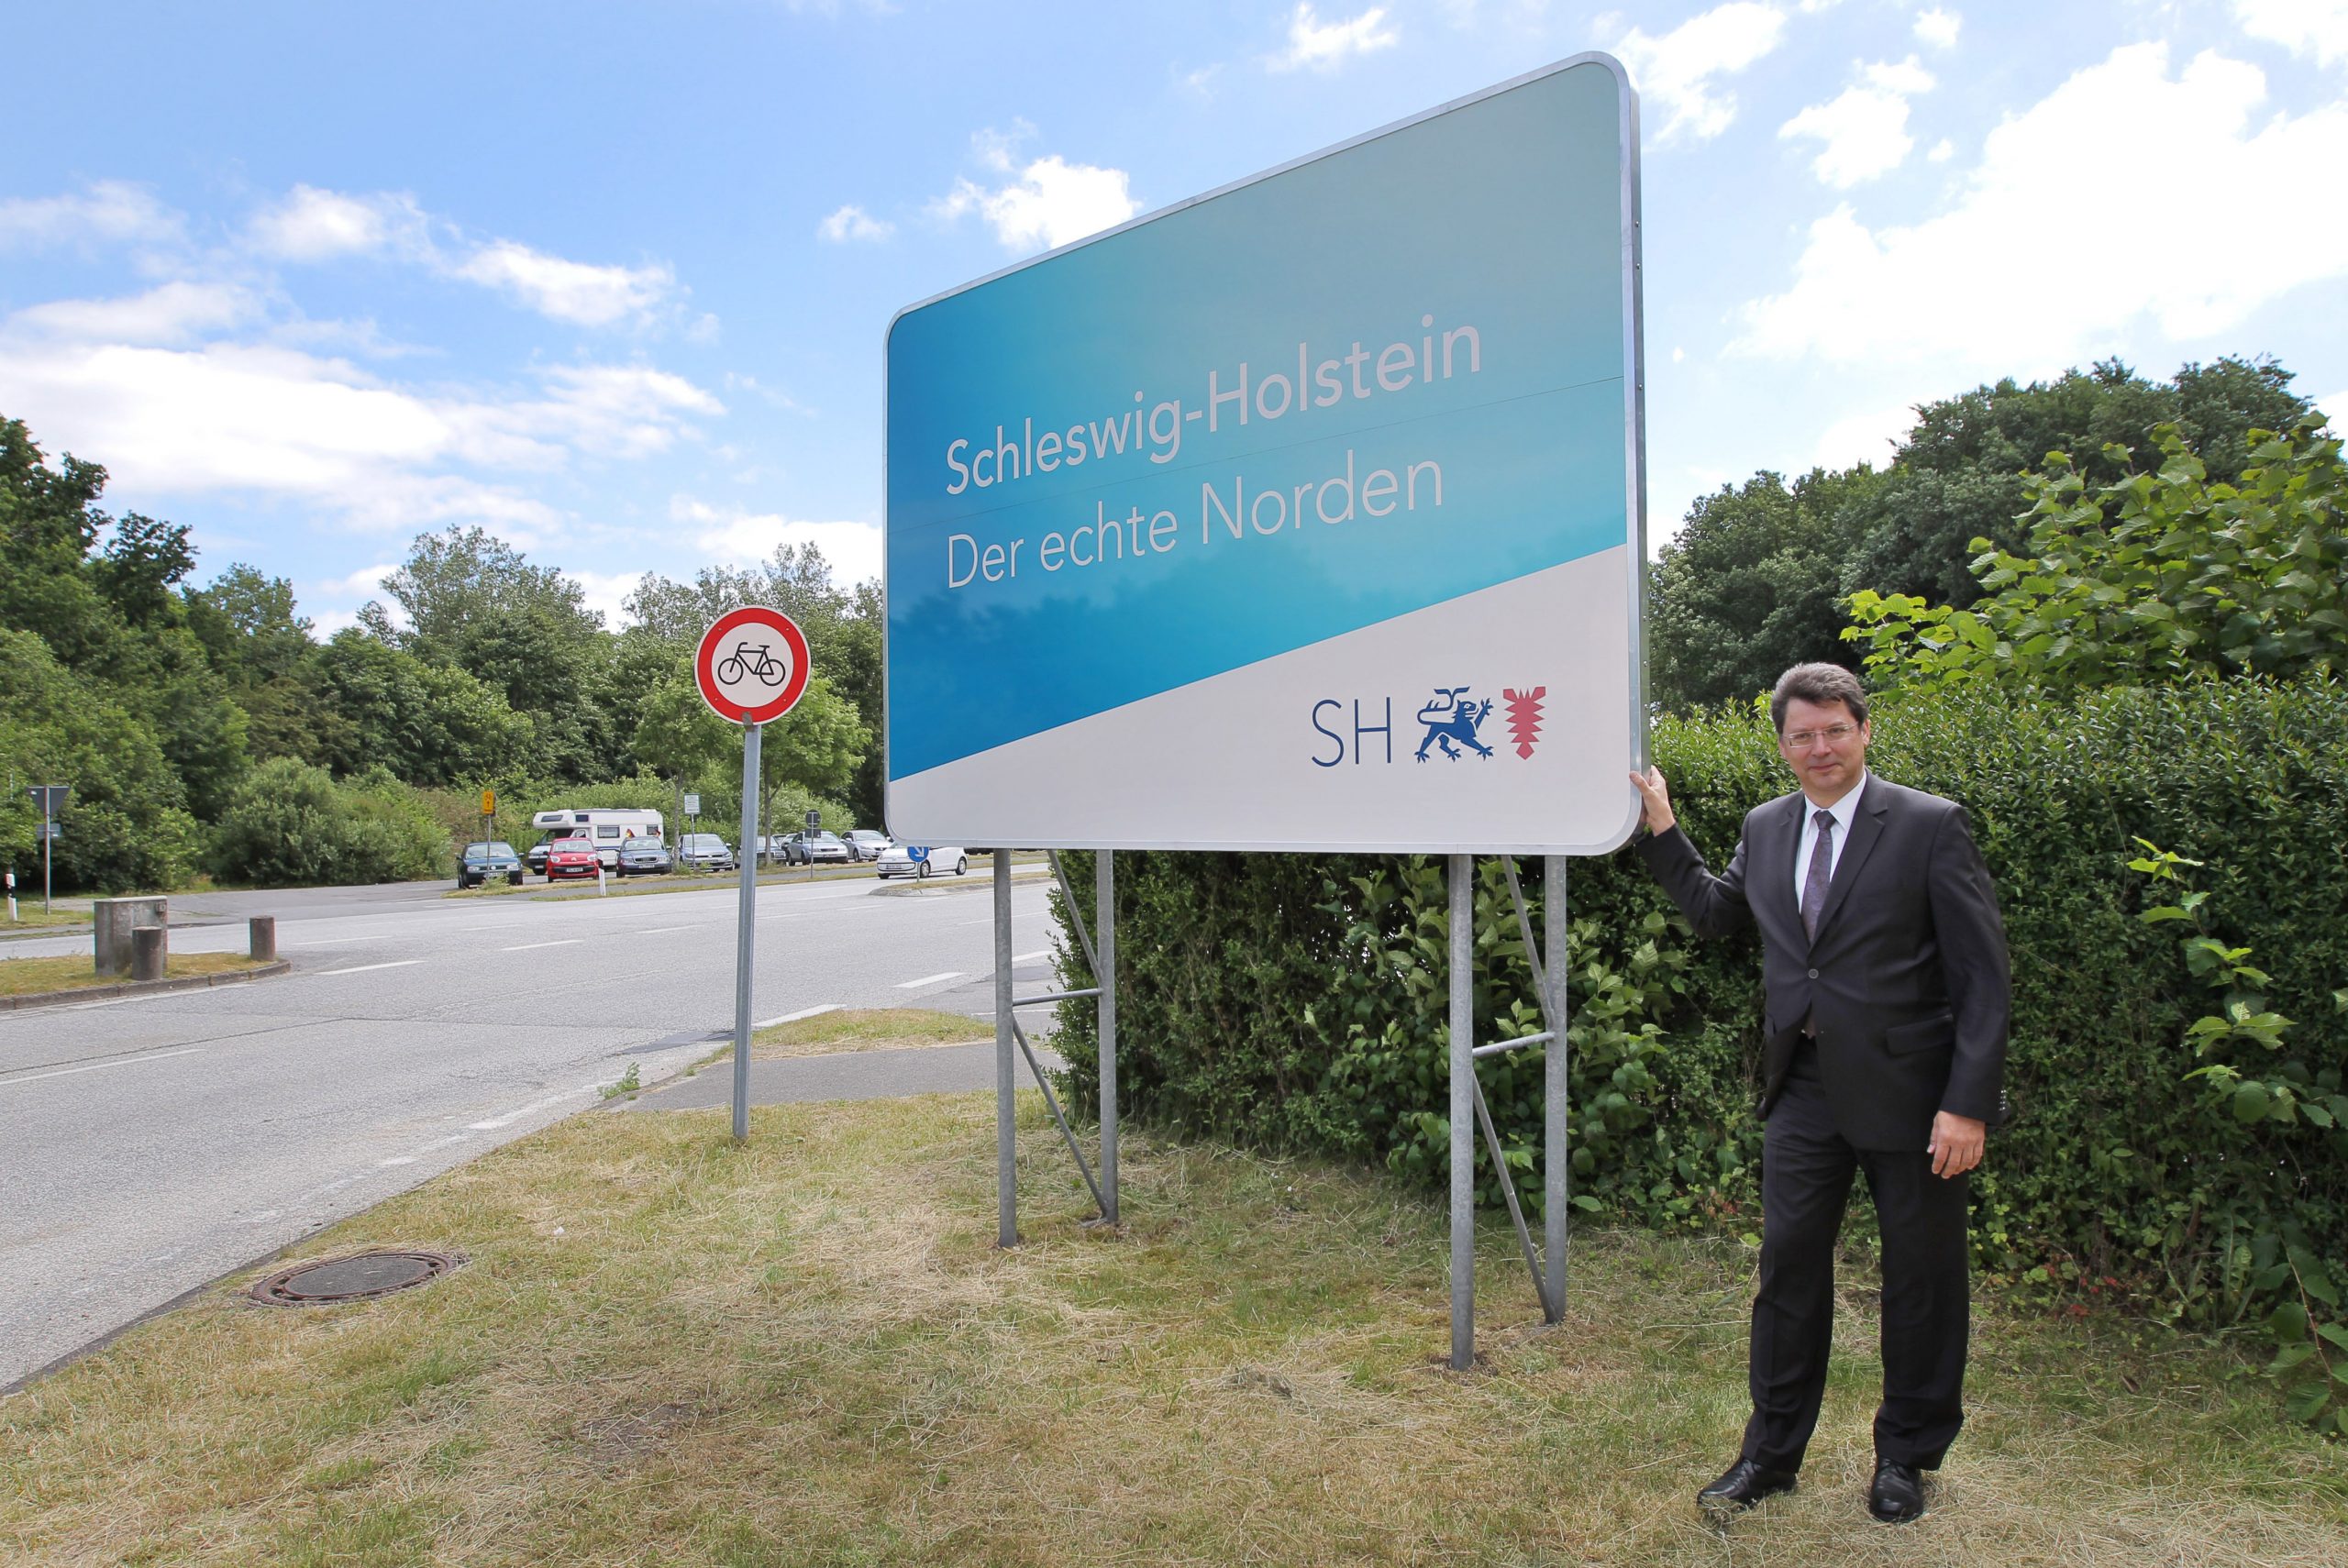 Verkehrsminister Reinhard Meyer (SPD) stellt am 23.06.2014 in Harrislee (Schleswig-Holstein) bei Flensburg das neue Schild mit dem offiziellen Slogan des Landes Schleswig-Holstein Der echte Norden» vor.